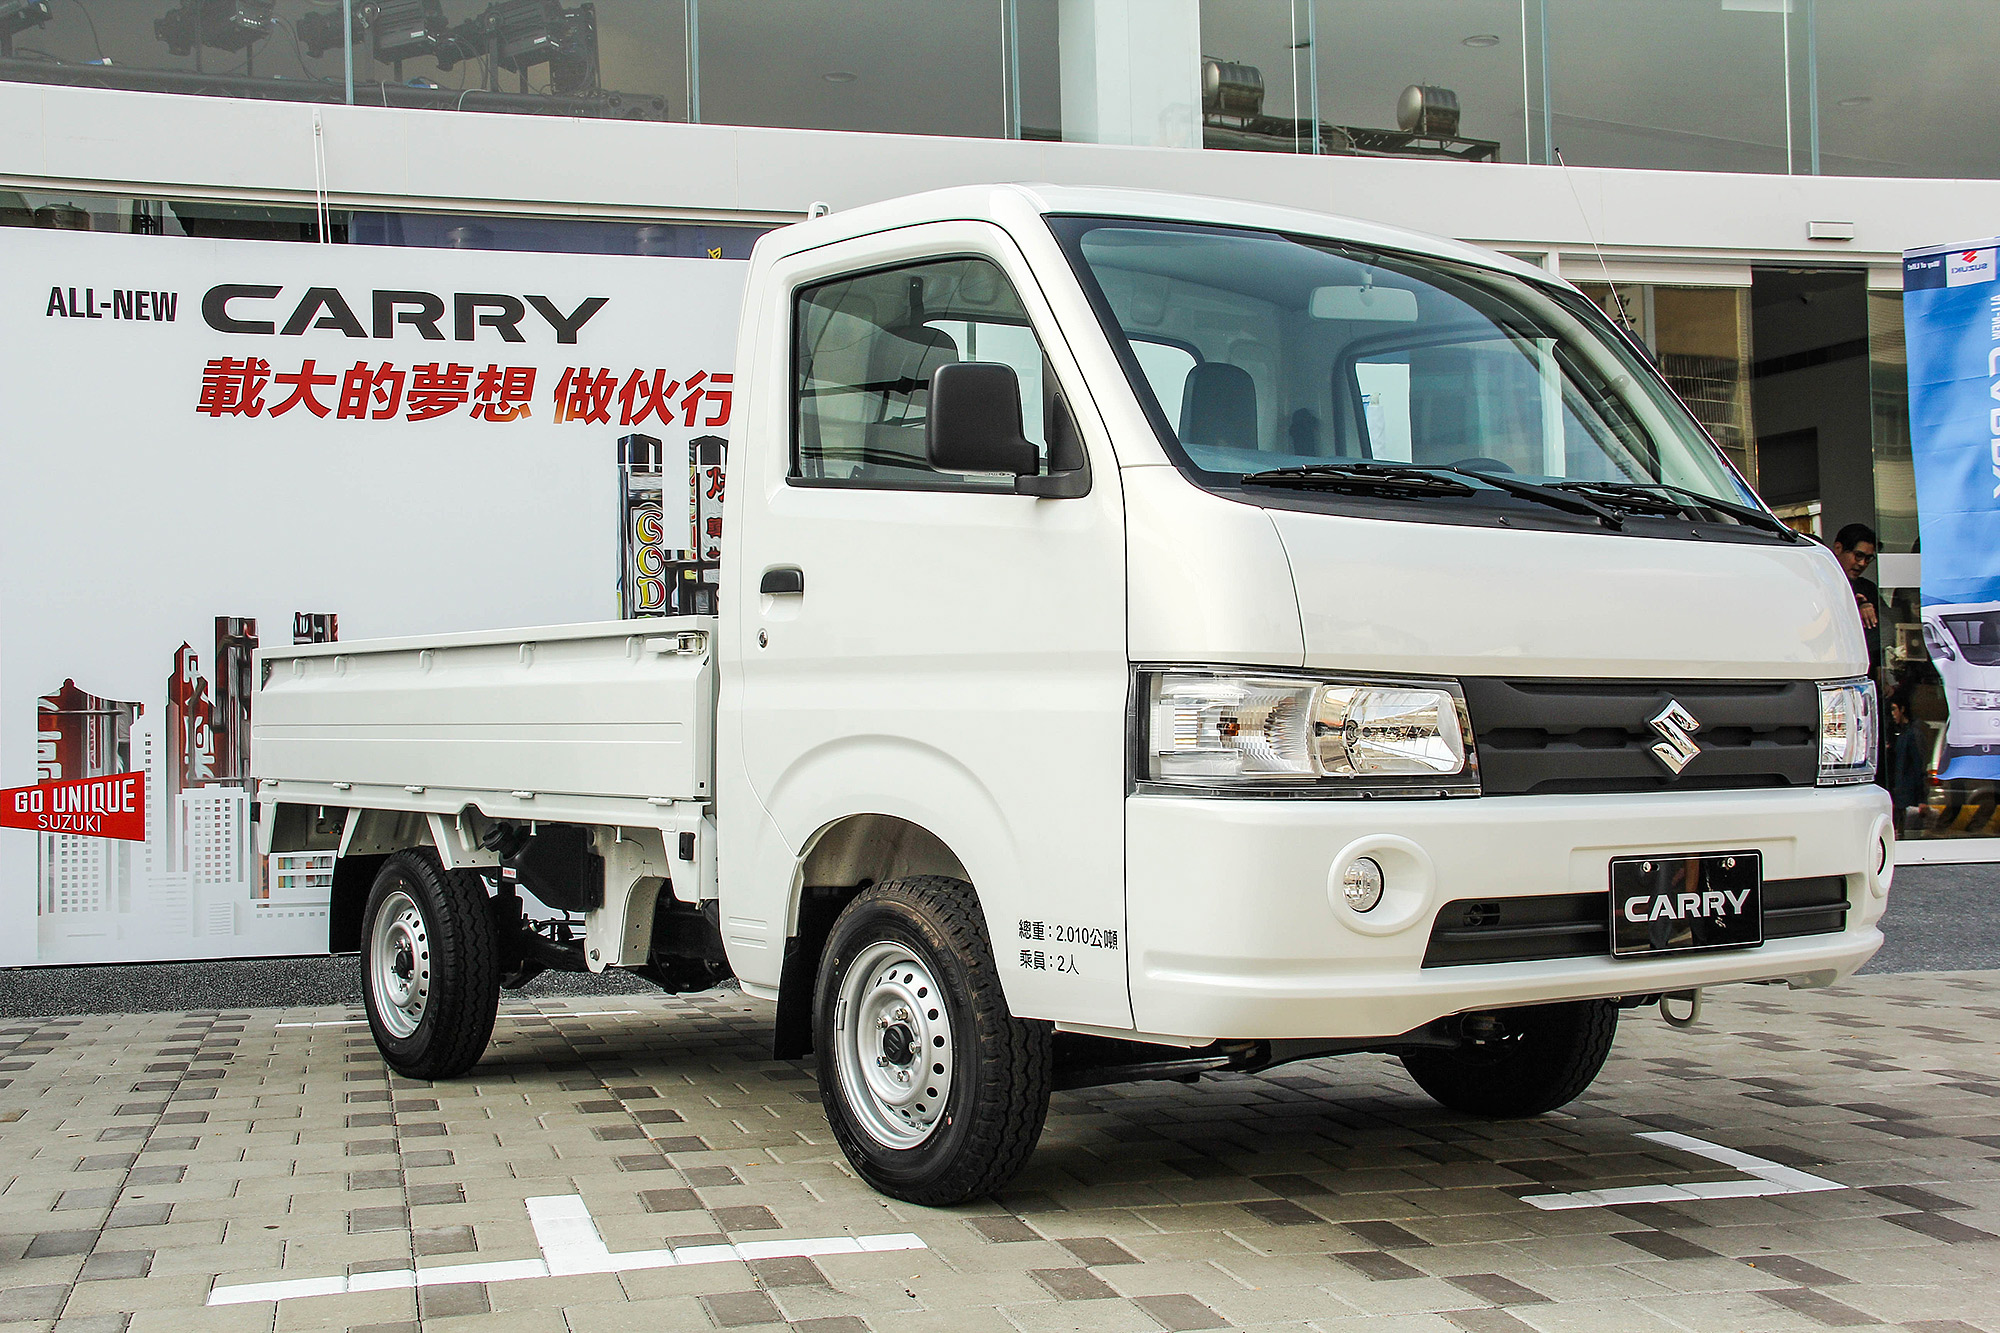 新世代 Carry 開價 49.9 萬元正式來台開賣。